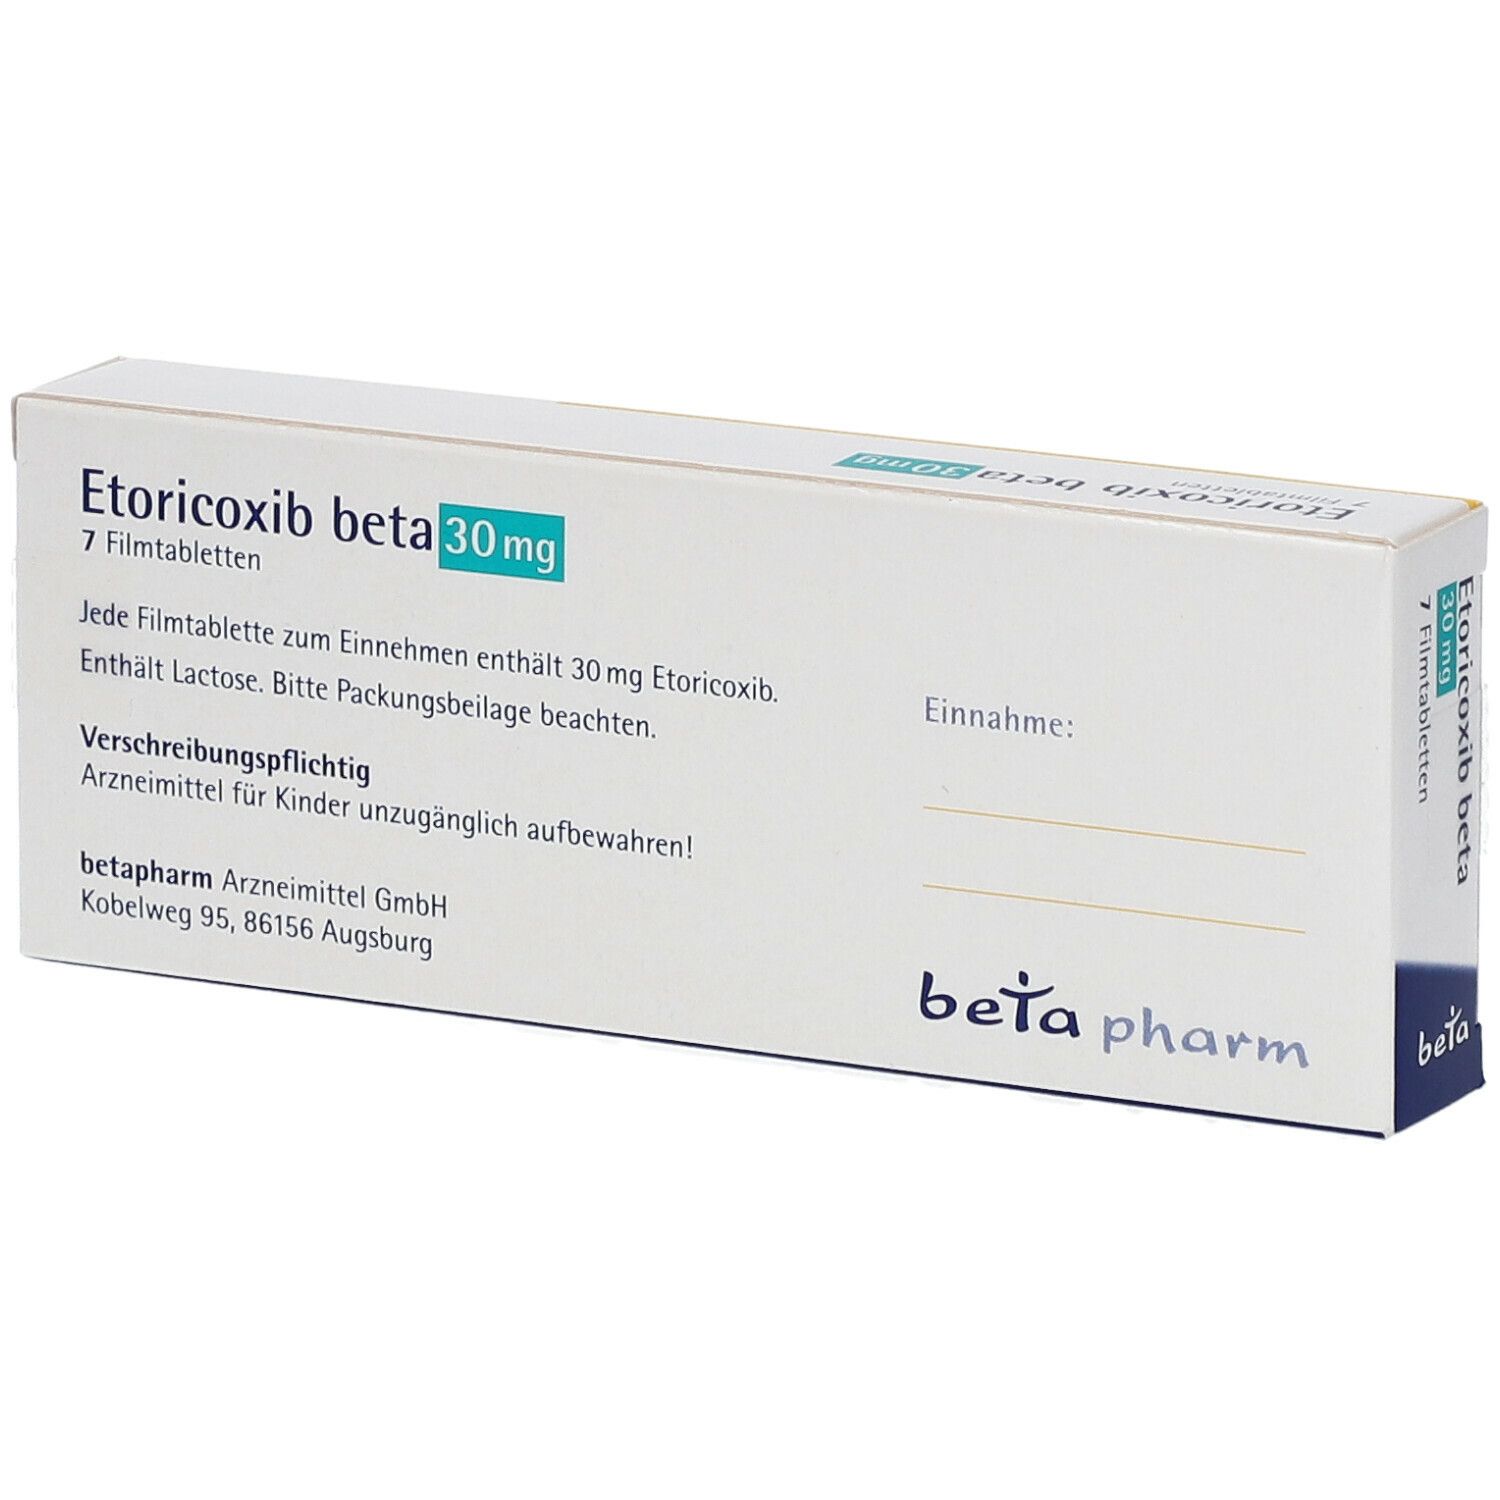 Etoricoxib beta 30 mg